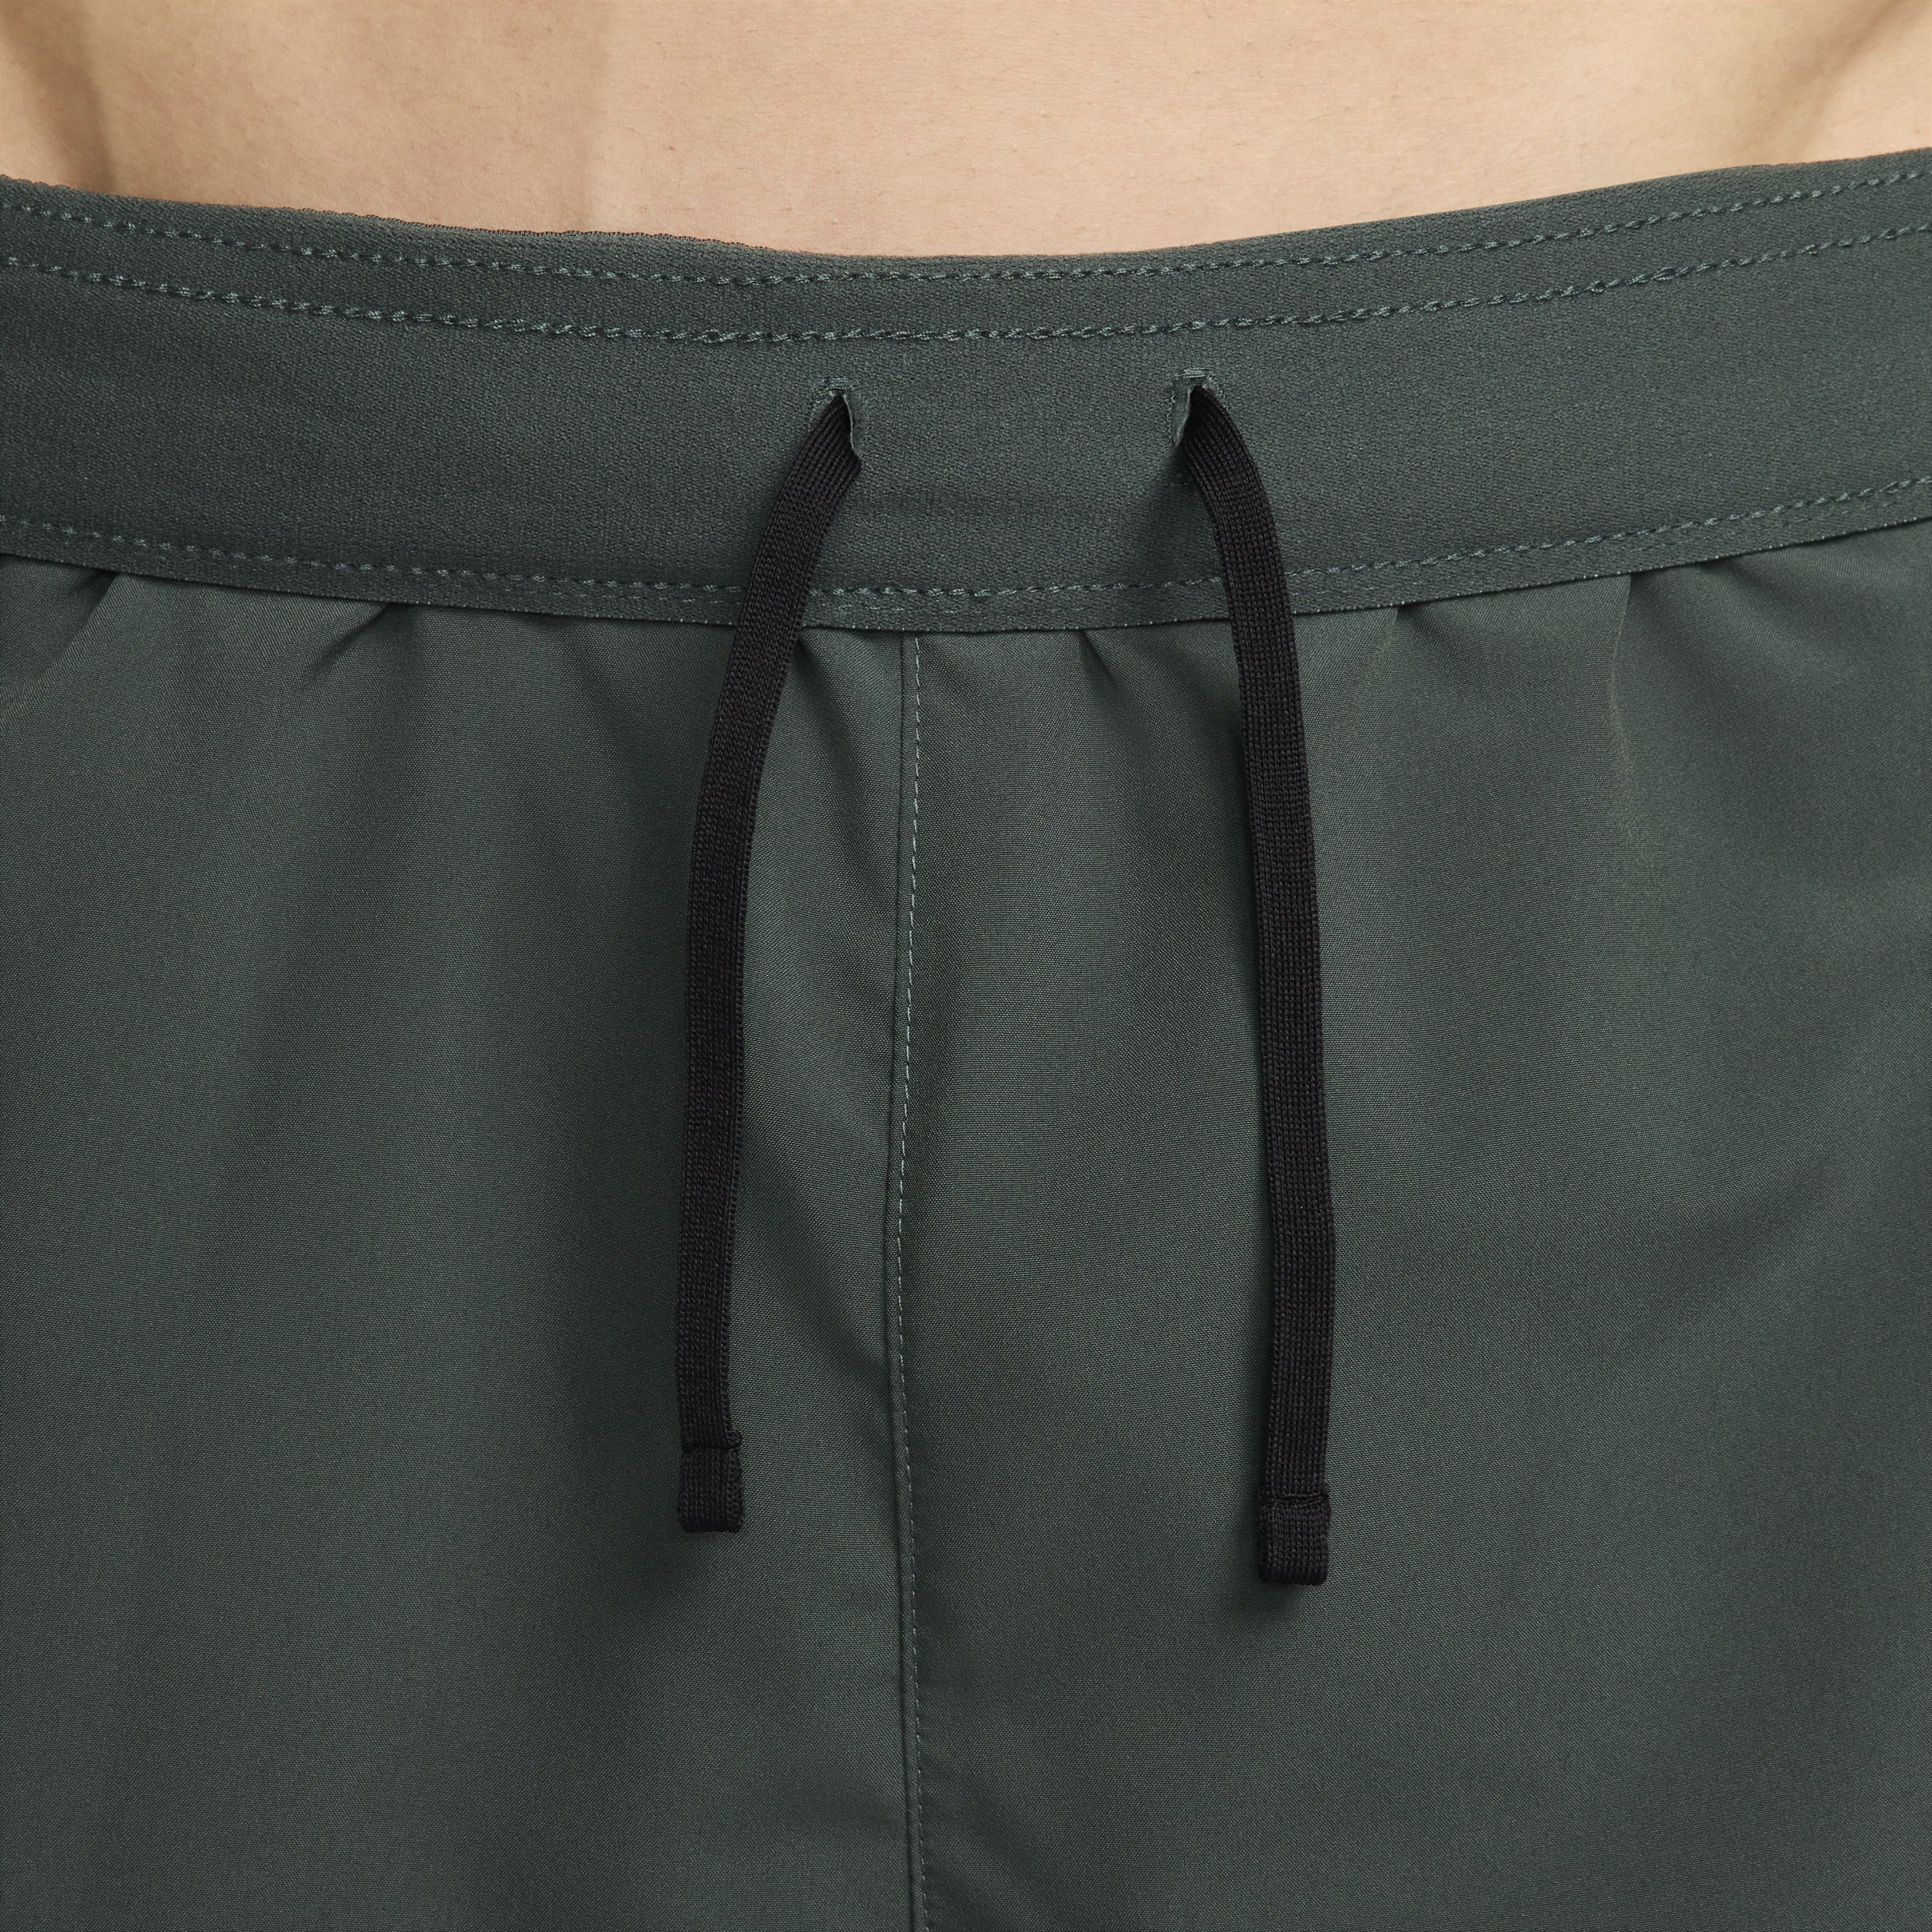 Nike Challenger Dri-FIT hardloopshorts met binnenbroek voor heren (18 cm) Groen